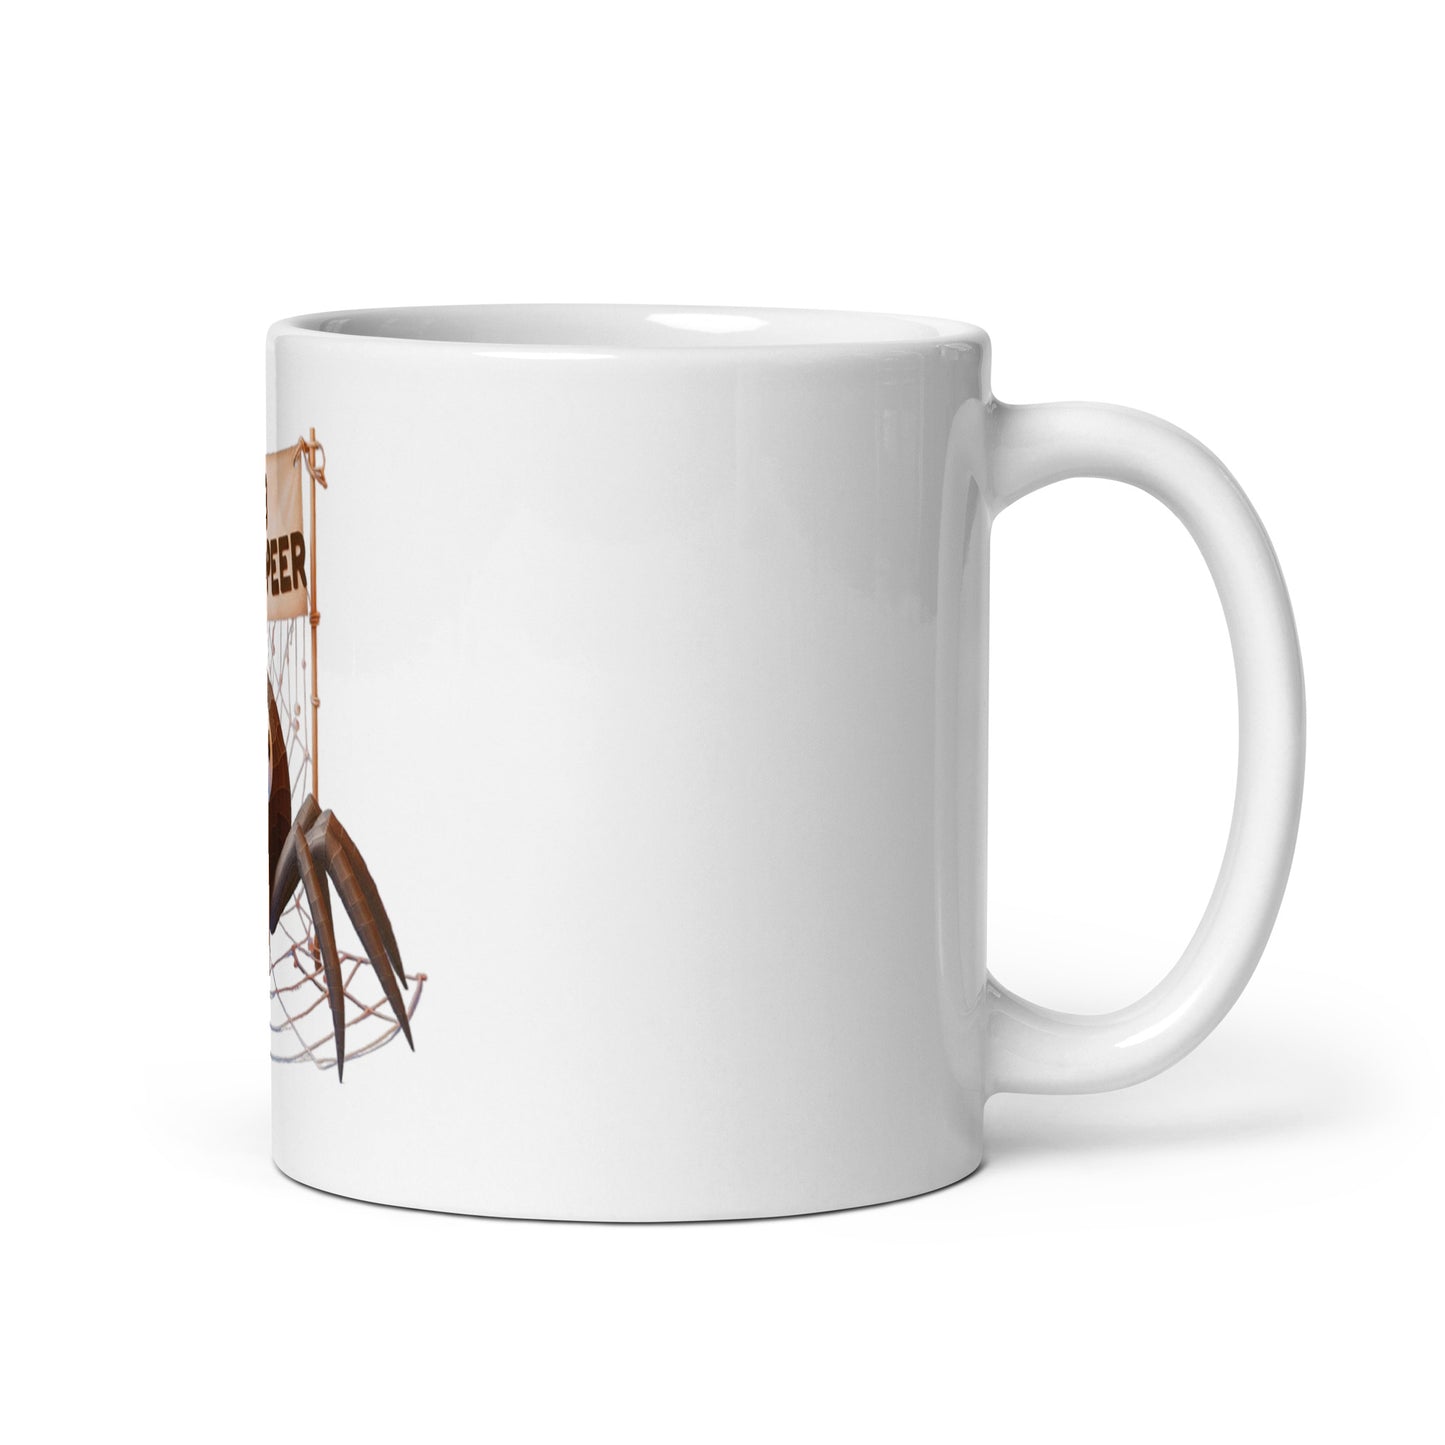 Web Developer mug